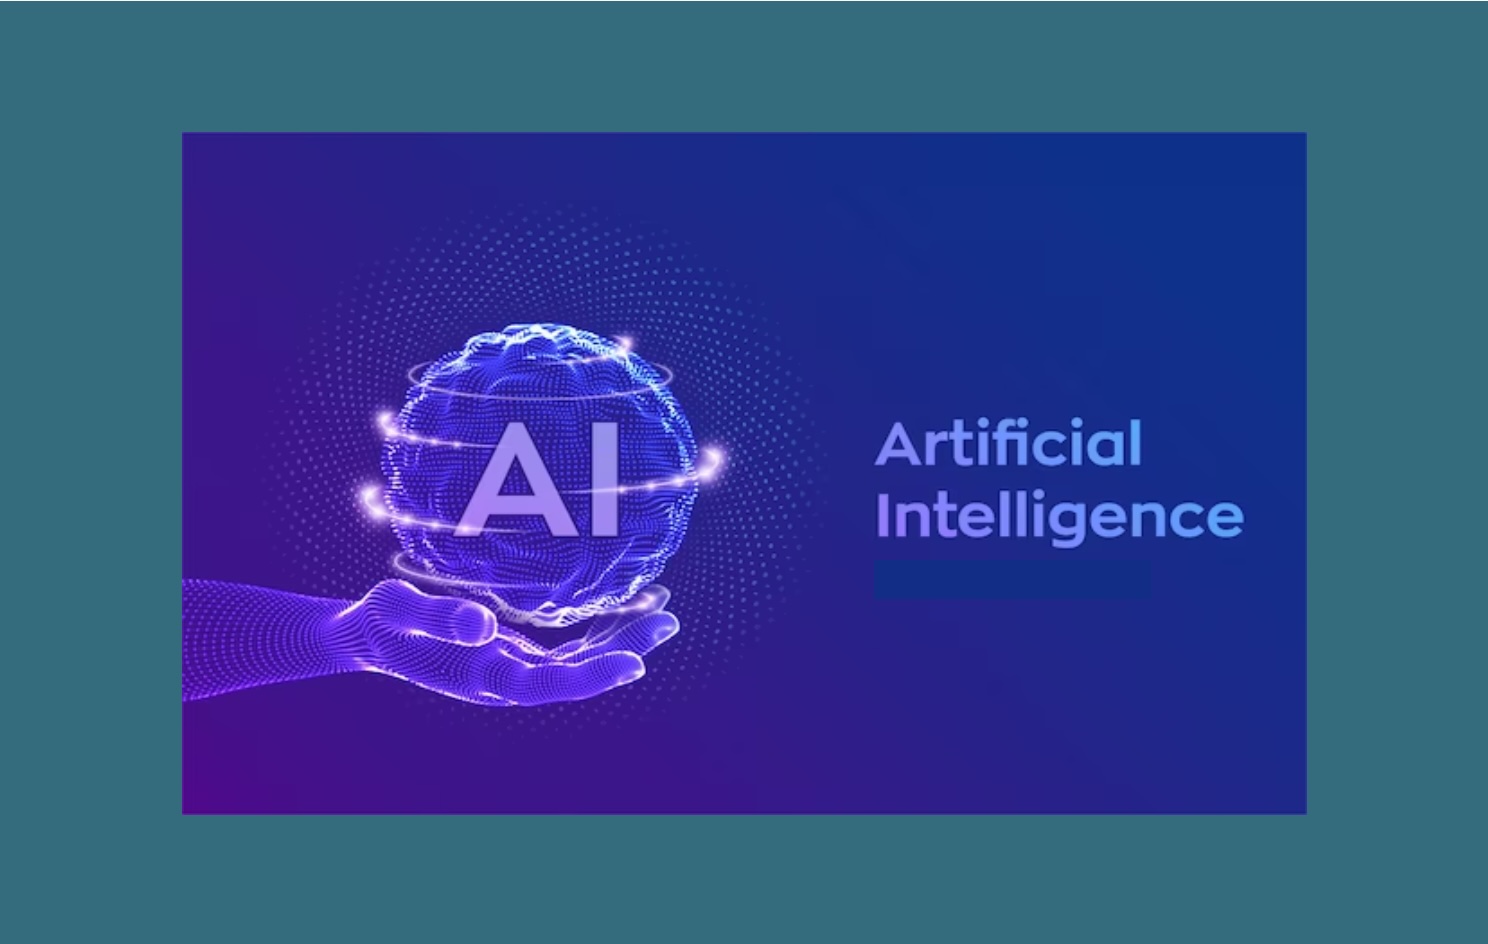 L’IA : Transformations, impacts et responsabilités dans le monde d’aujourd’hui